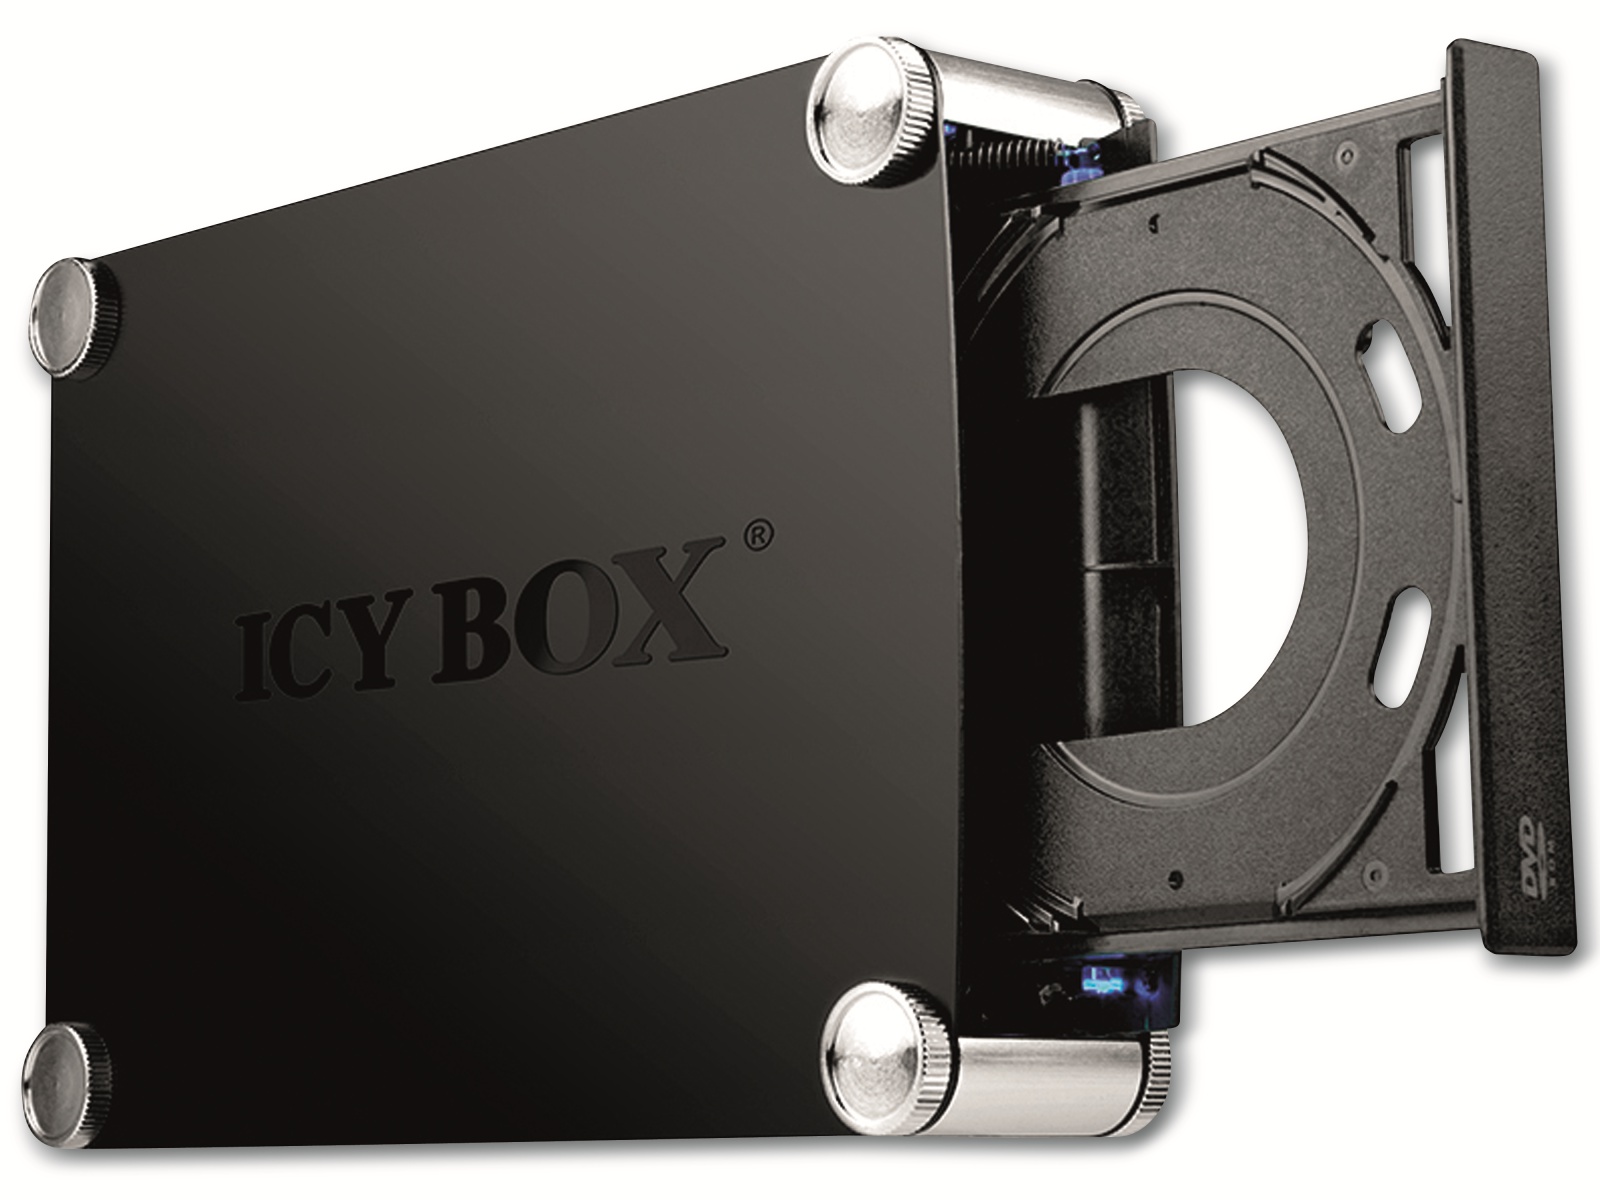 ICY BOX DVD-Gehäuse IB-550StU3S, SATA 5,25" zu USB 3.0 + eSATA Host, Alu